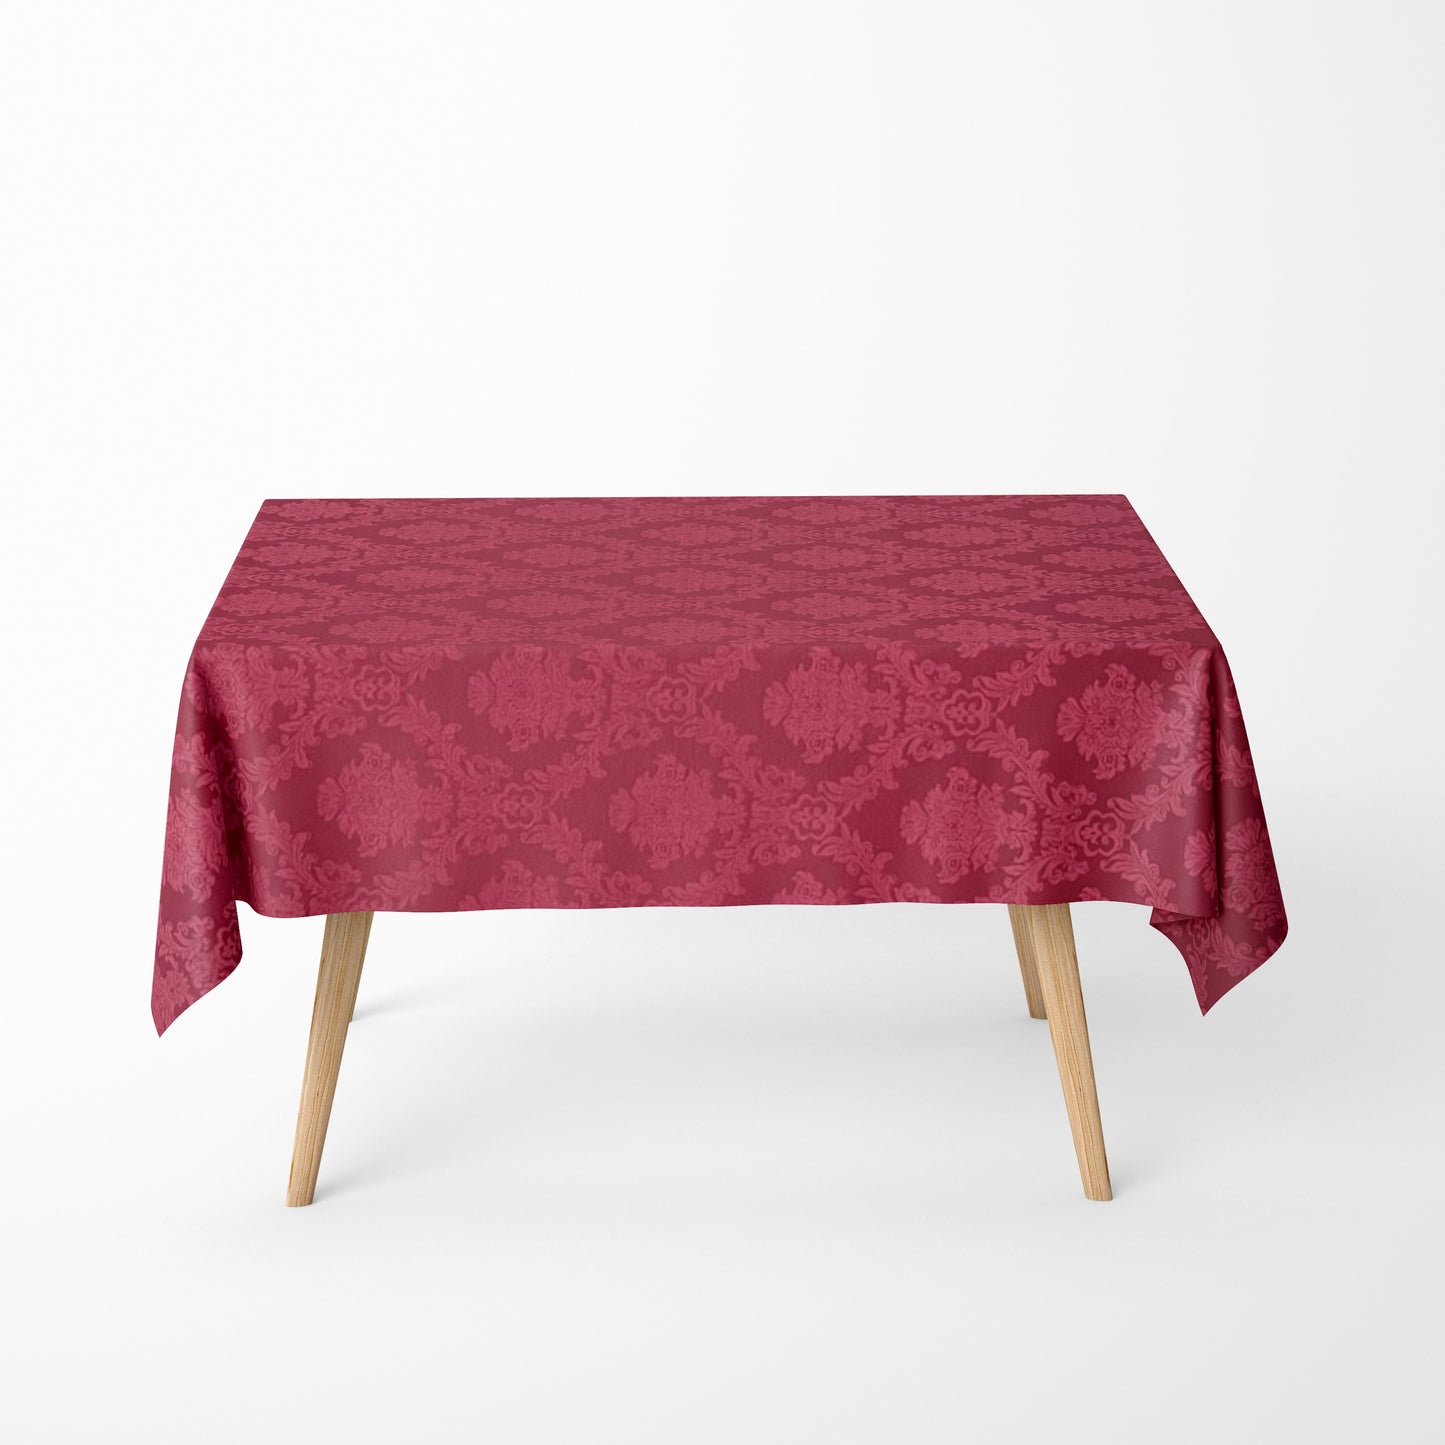 textile Tischdecke Jacquard beschichtete Baumwolle Weihnachten ELYSE Classic unico08 cerry rot eckig rund oval